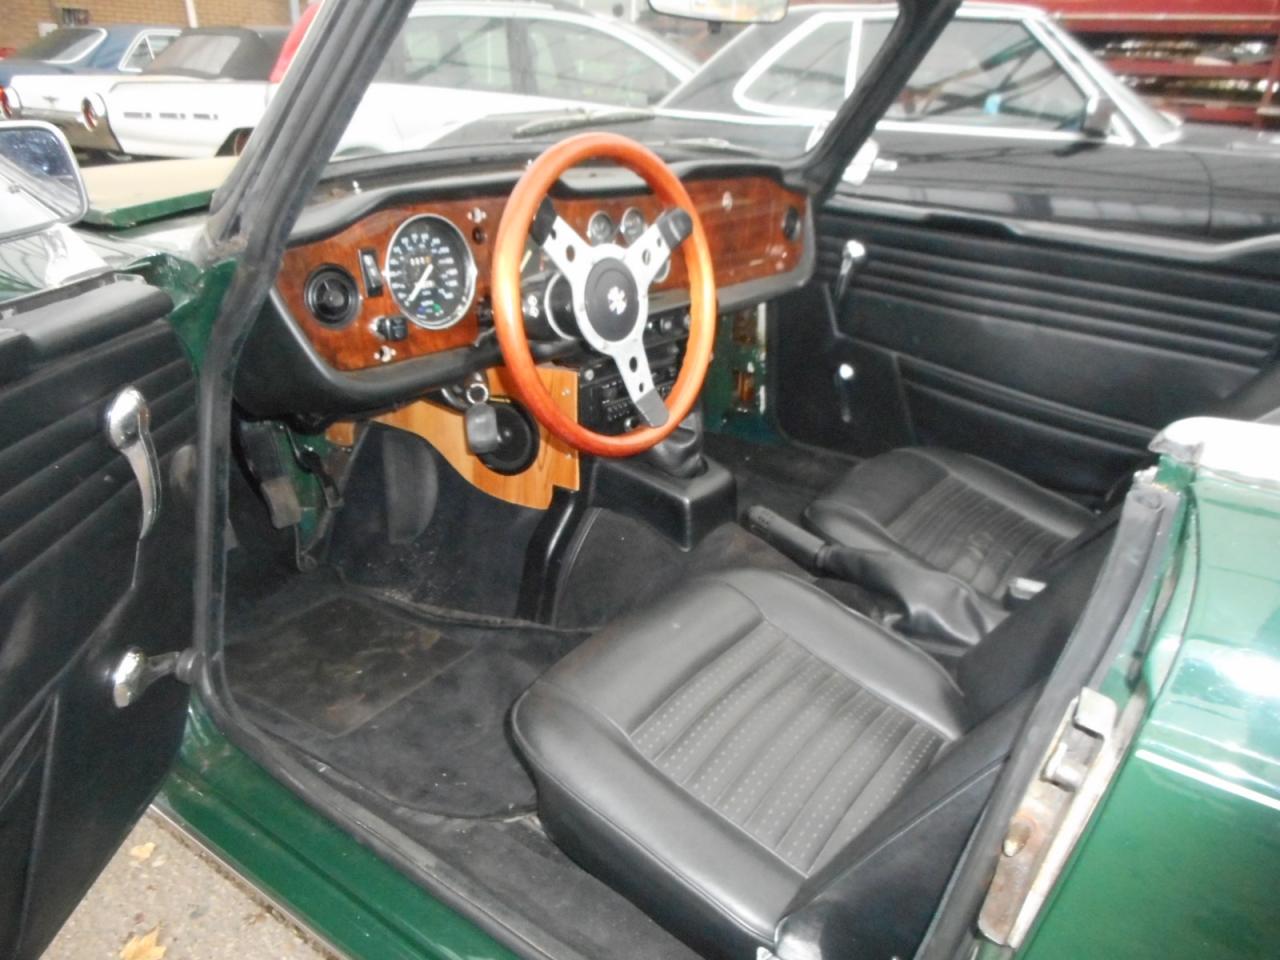 1973 Triumph TR6 pi perfect